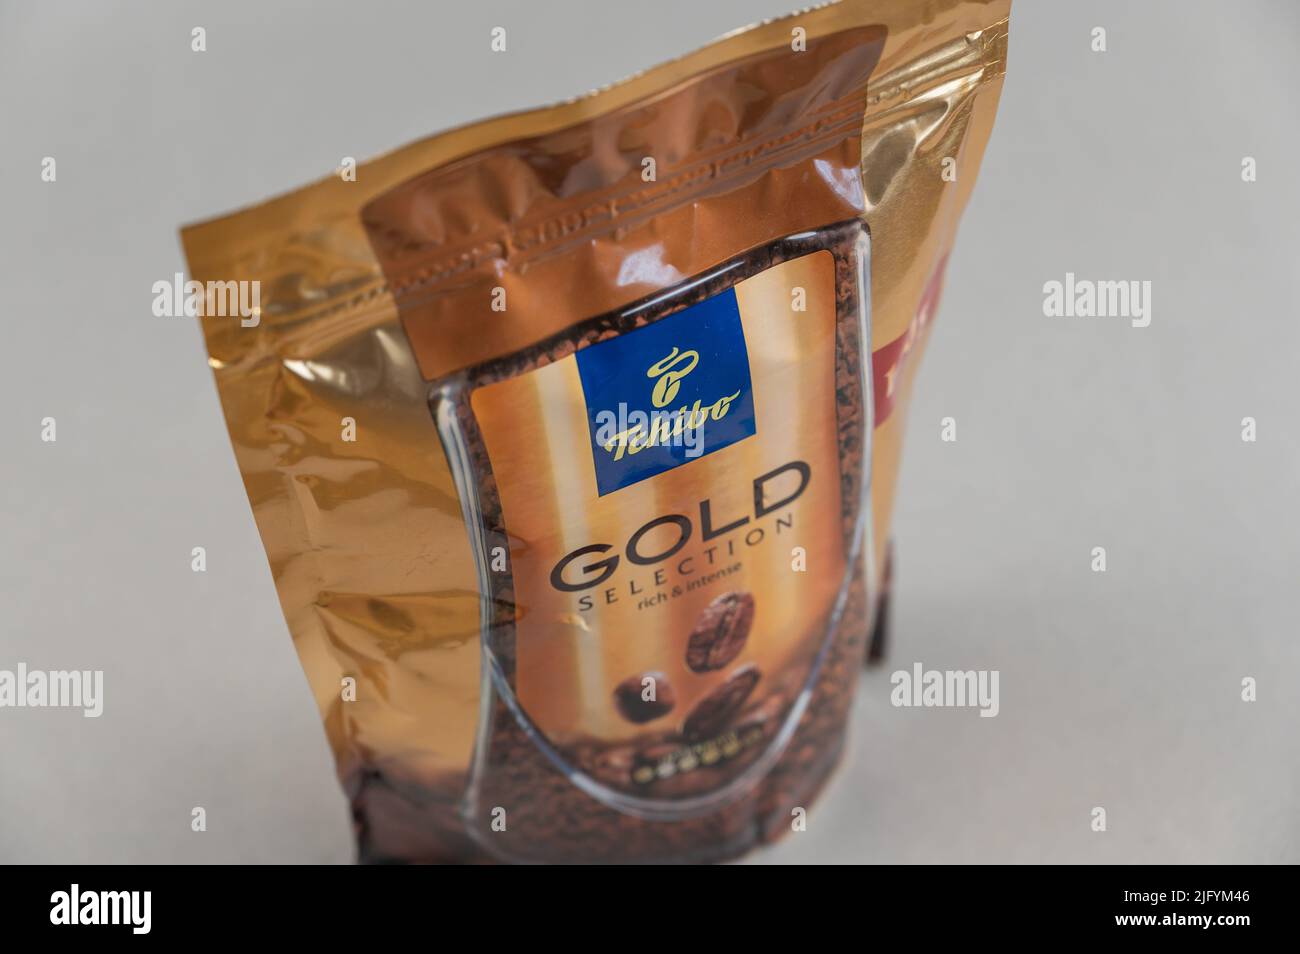 Tchibo Gold Selection Kaffee gegen Grau. Tchibo deutsches Unternehmen in der Produktion von Kaffee, sowie Markenbekleidung, Haushaltsgeräte, Hausgerätes beschäftigt Stockfoto